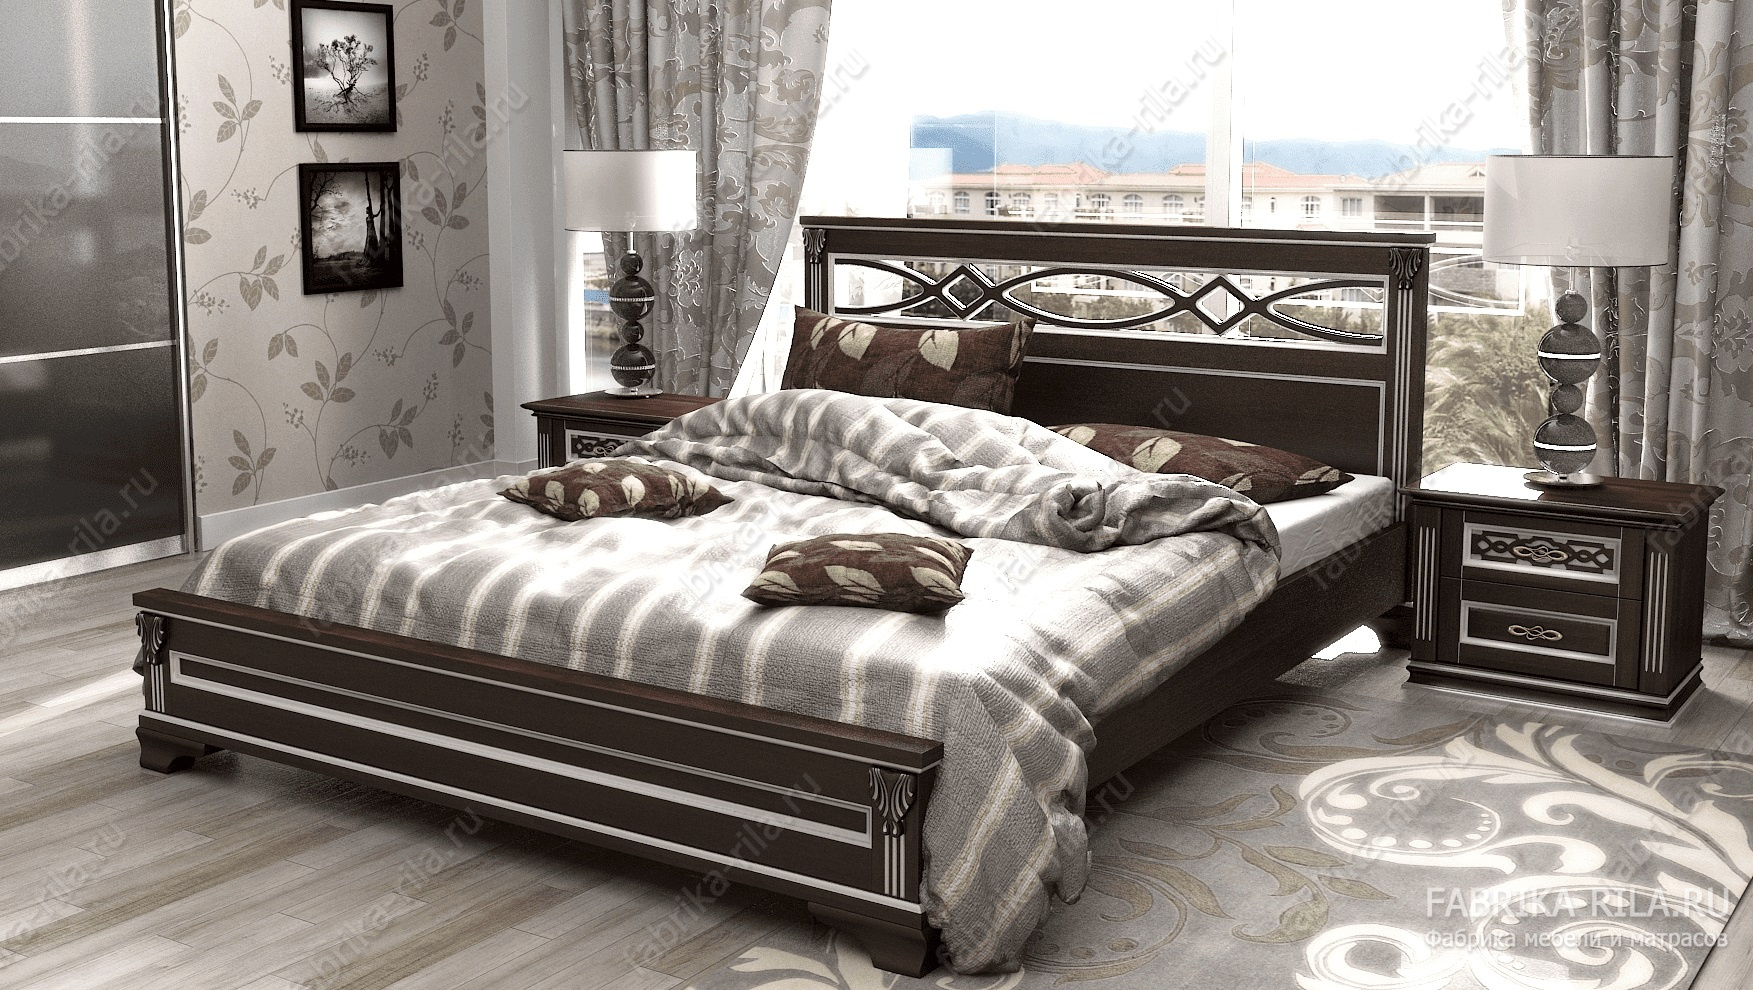 Кровать Lirоna 1 — 90x200 см. из сосны